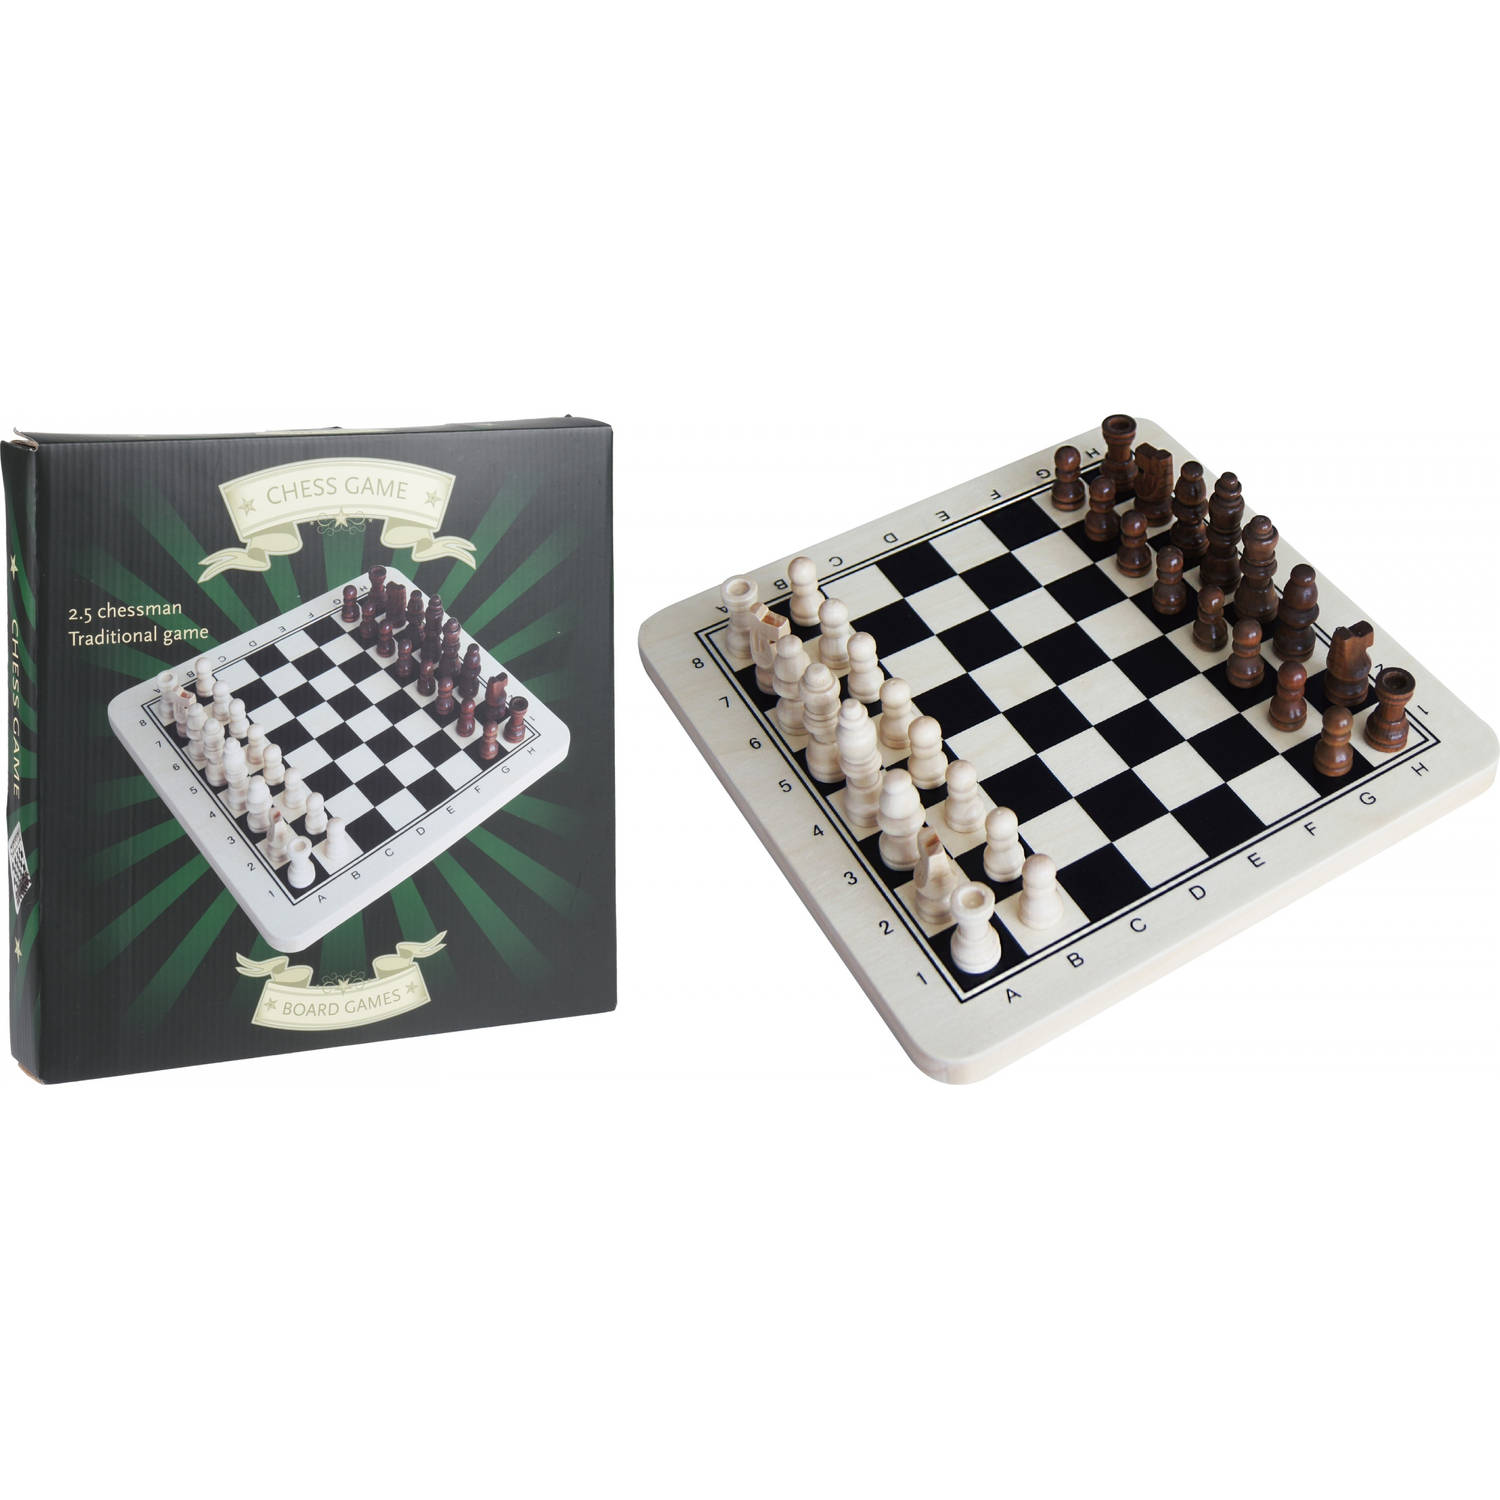 Schijnen tempo Huiswerk maken Tender Toys schaakbord 29 x 29 cm hout zwart/wit/bruin | Blokker